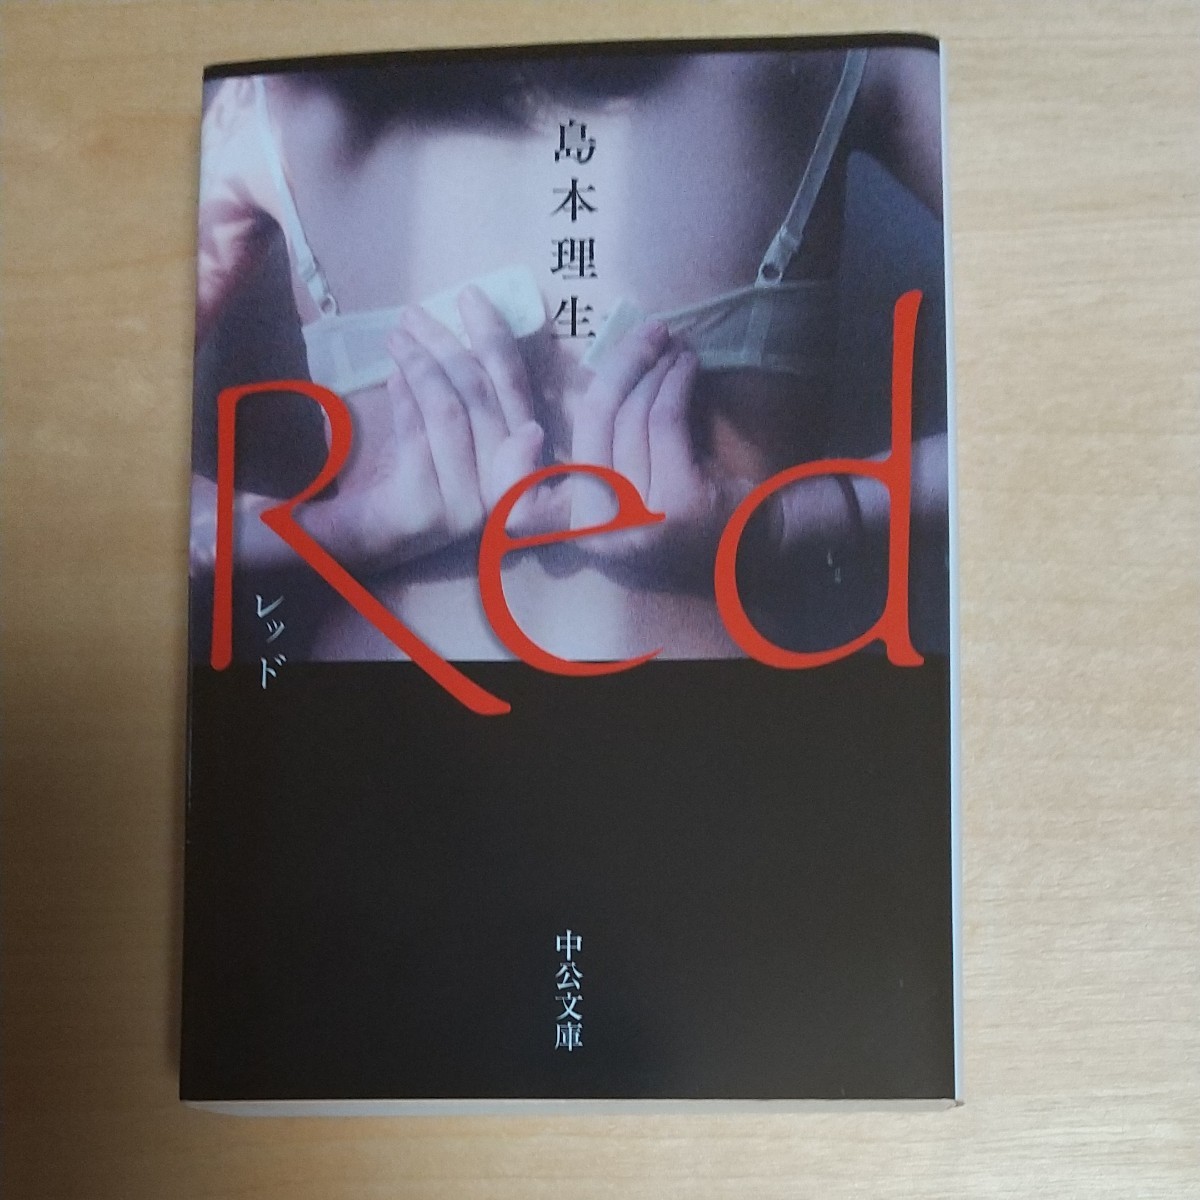 Red/島本理生